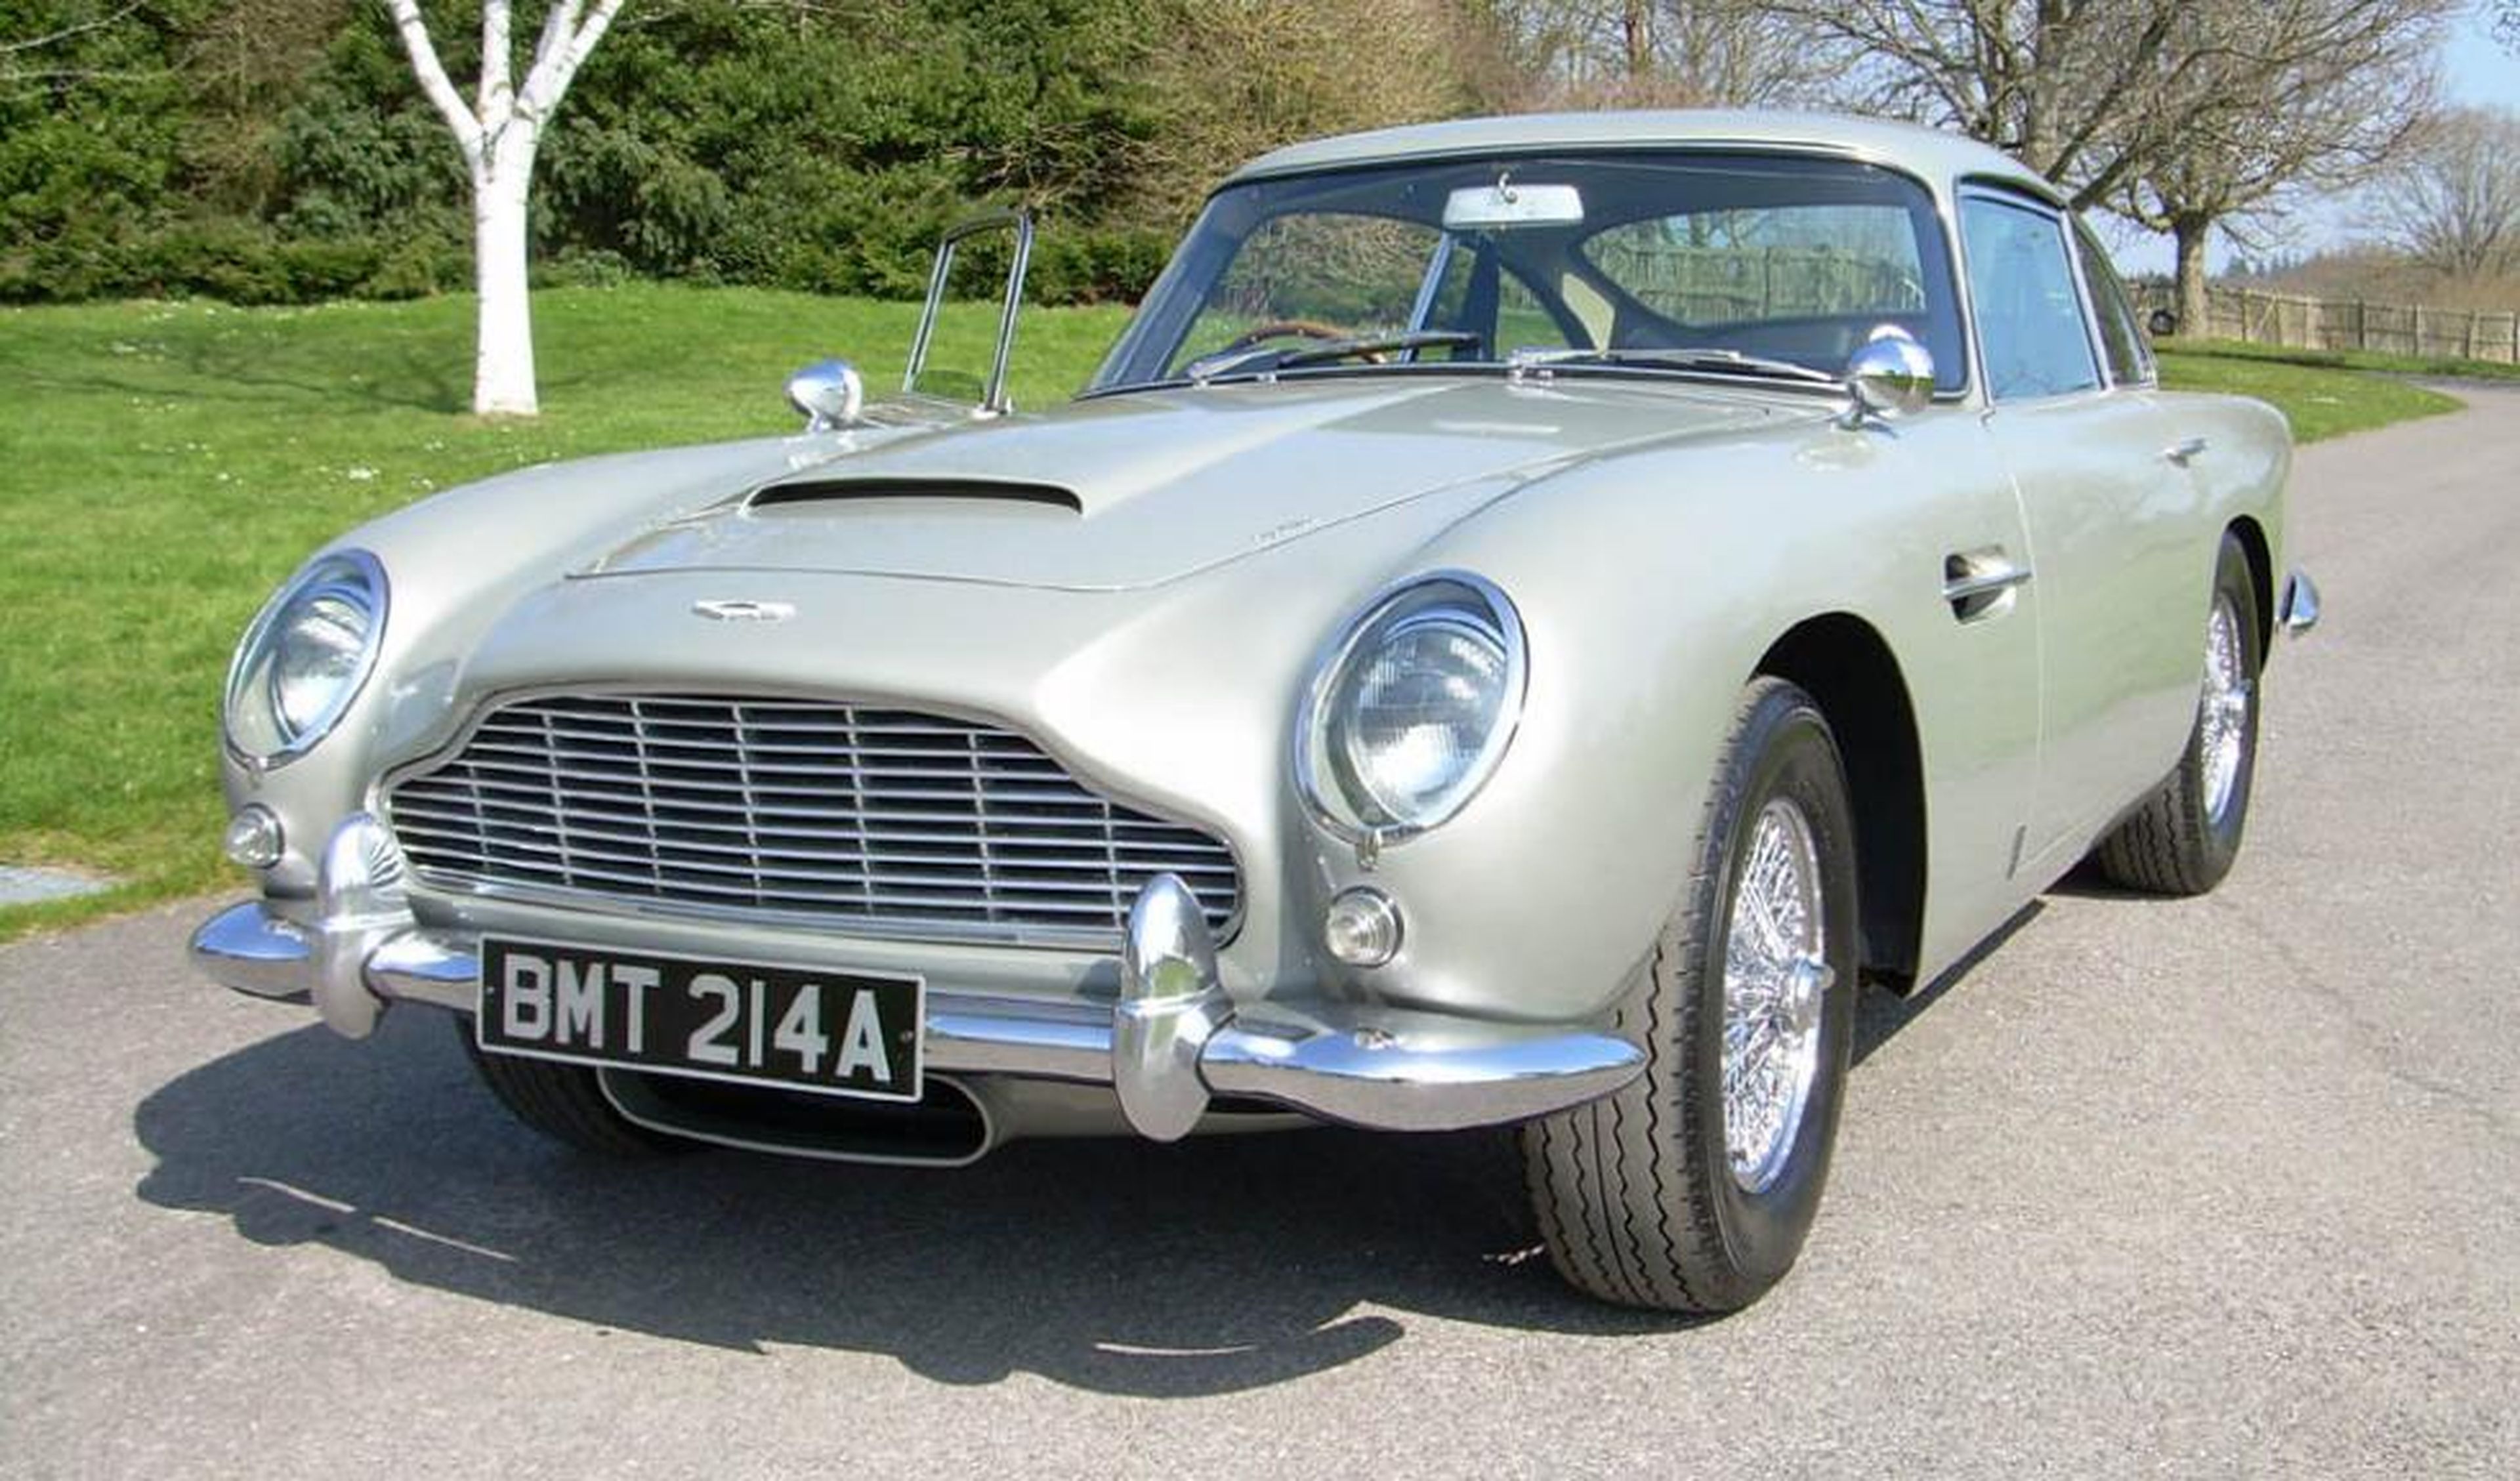 Aston Martin recrea el icónico DB5 que aparece en la película de James Bond 'Goldfinger'